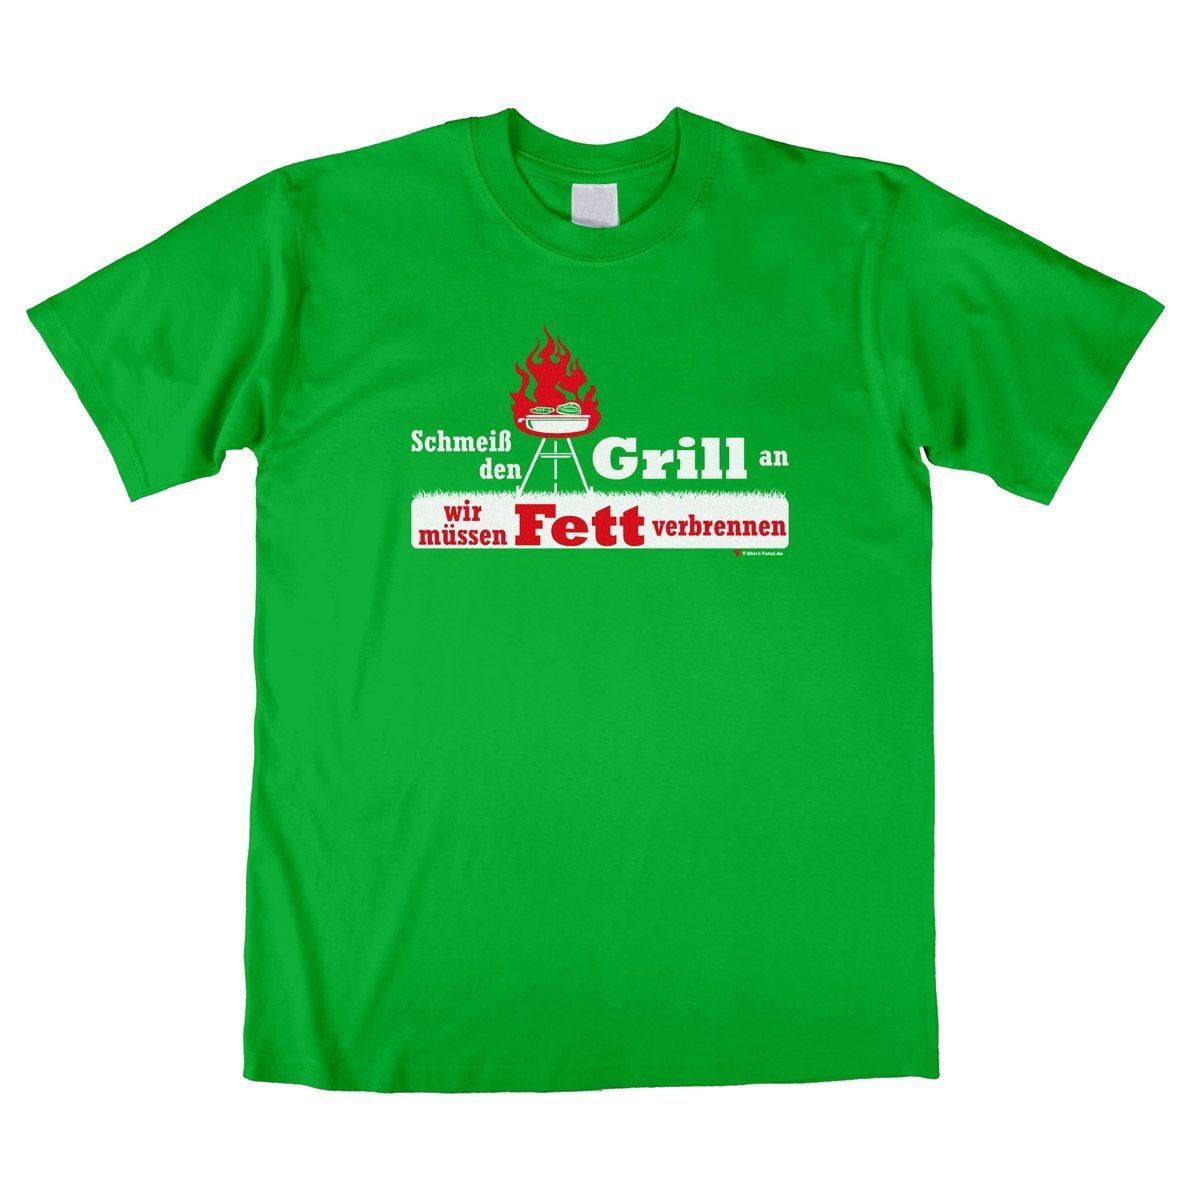 Fett verbrennen Unisex T-Shirt grün Large